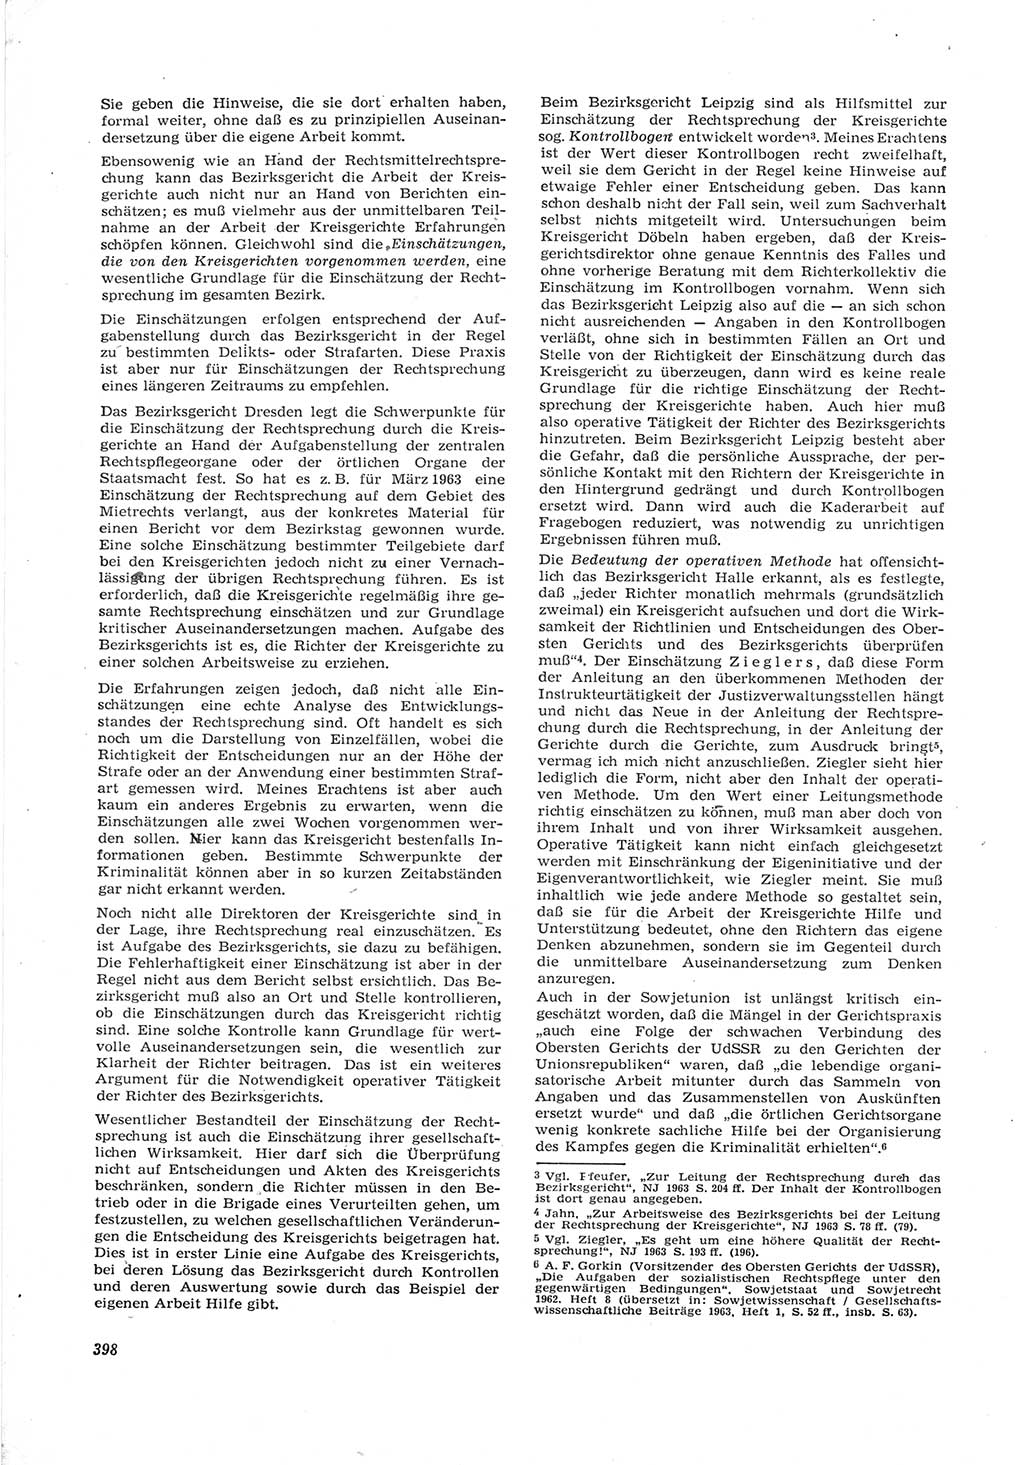 Neue Justiz (NJ), Zeitschrift für Recht und Rechtswissenschaft [Deutsche Demokratische Republik (DDR)], 17. Jahrgang 1963, Seite 398 (NJ DDR 1963, S. 398)